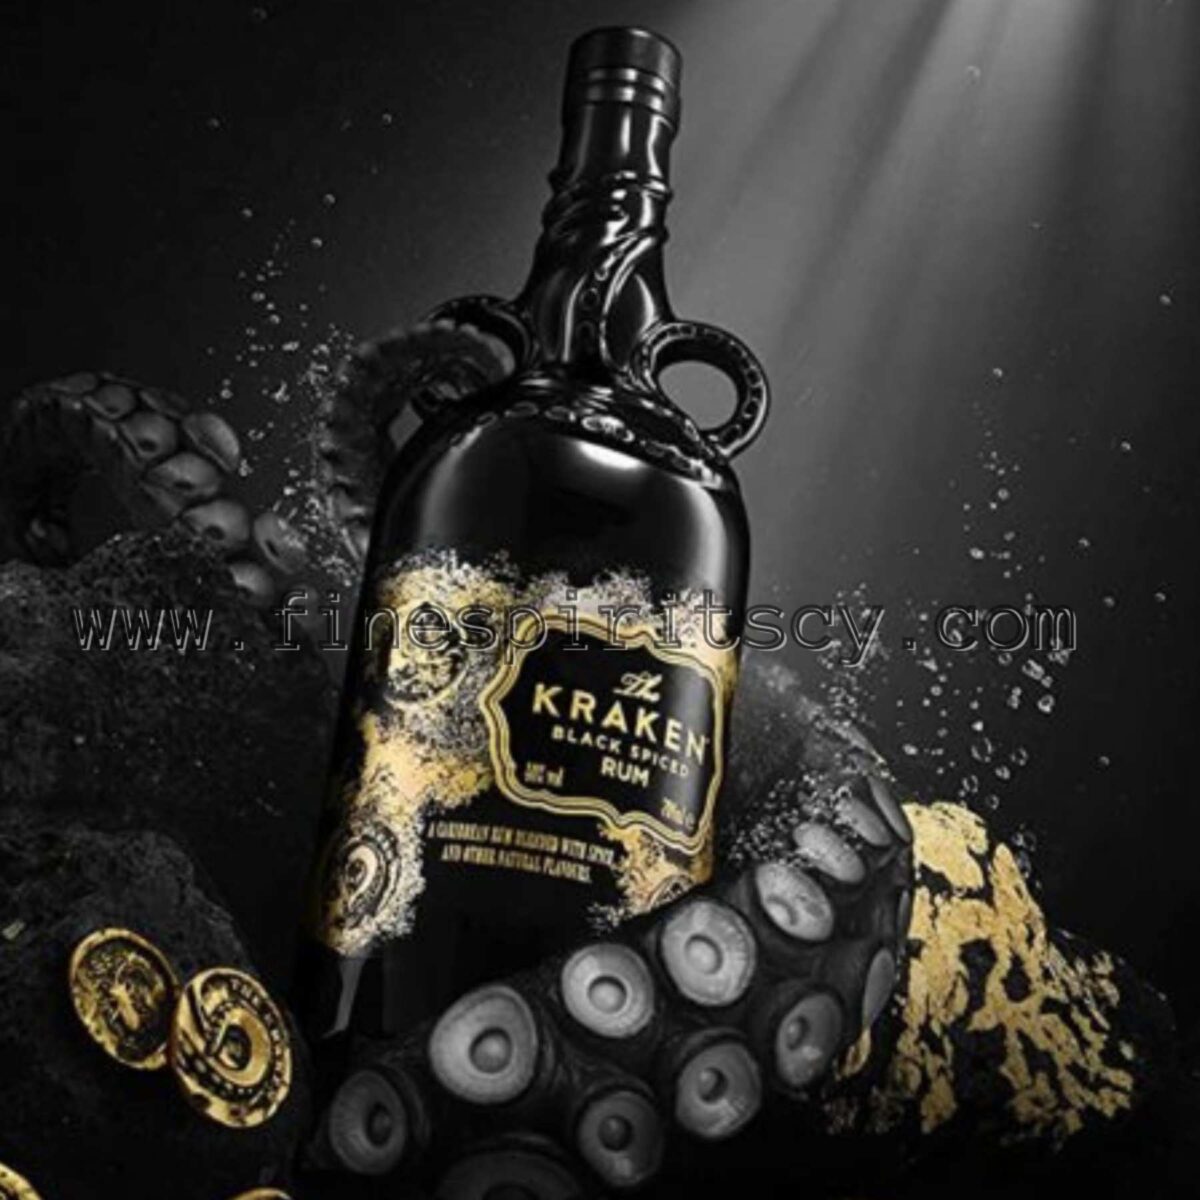 Kraken Unknown Deep Limited Edition Black Spiced Rum Best Prices Cyprus